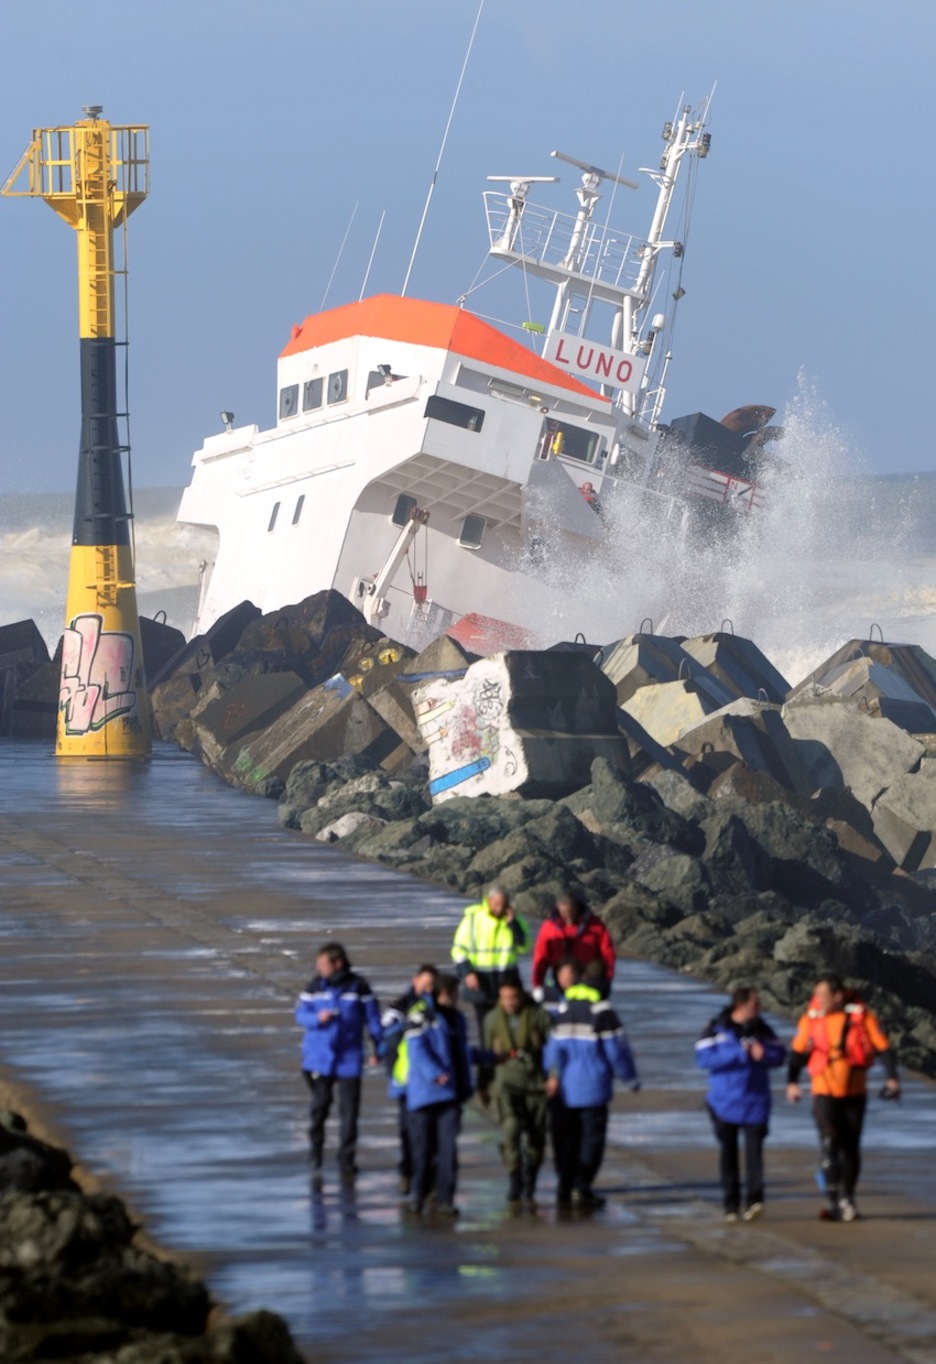 El fuerte oleaje ha dificultado las labores de salvamento pero finalmente los 12 tripulantes han sido rescatados. (Gaizka IROZ/AFP)